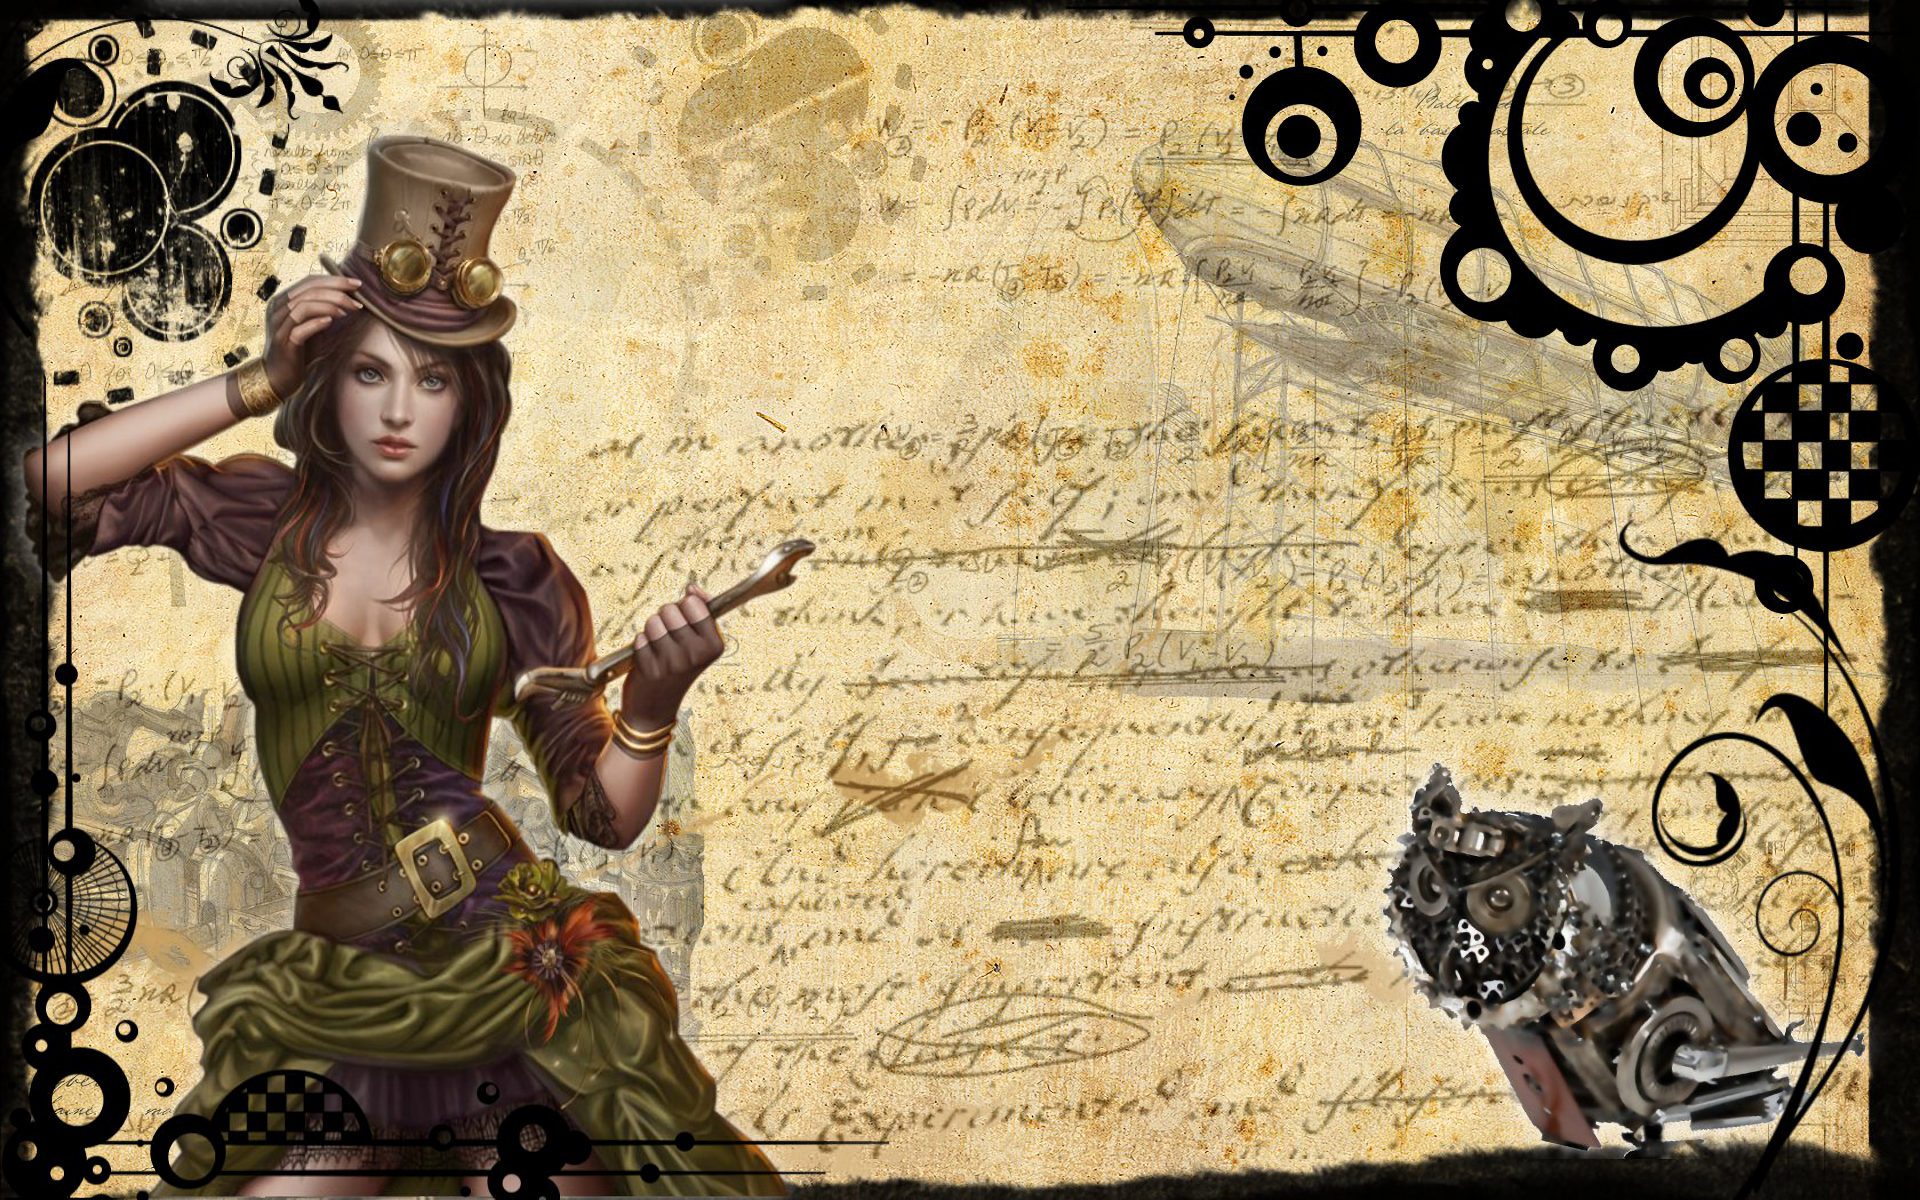 Steampunk Girl by Cris Ortega